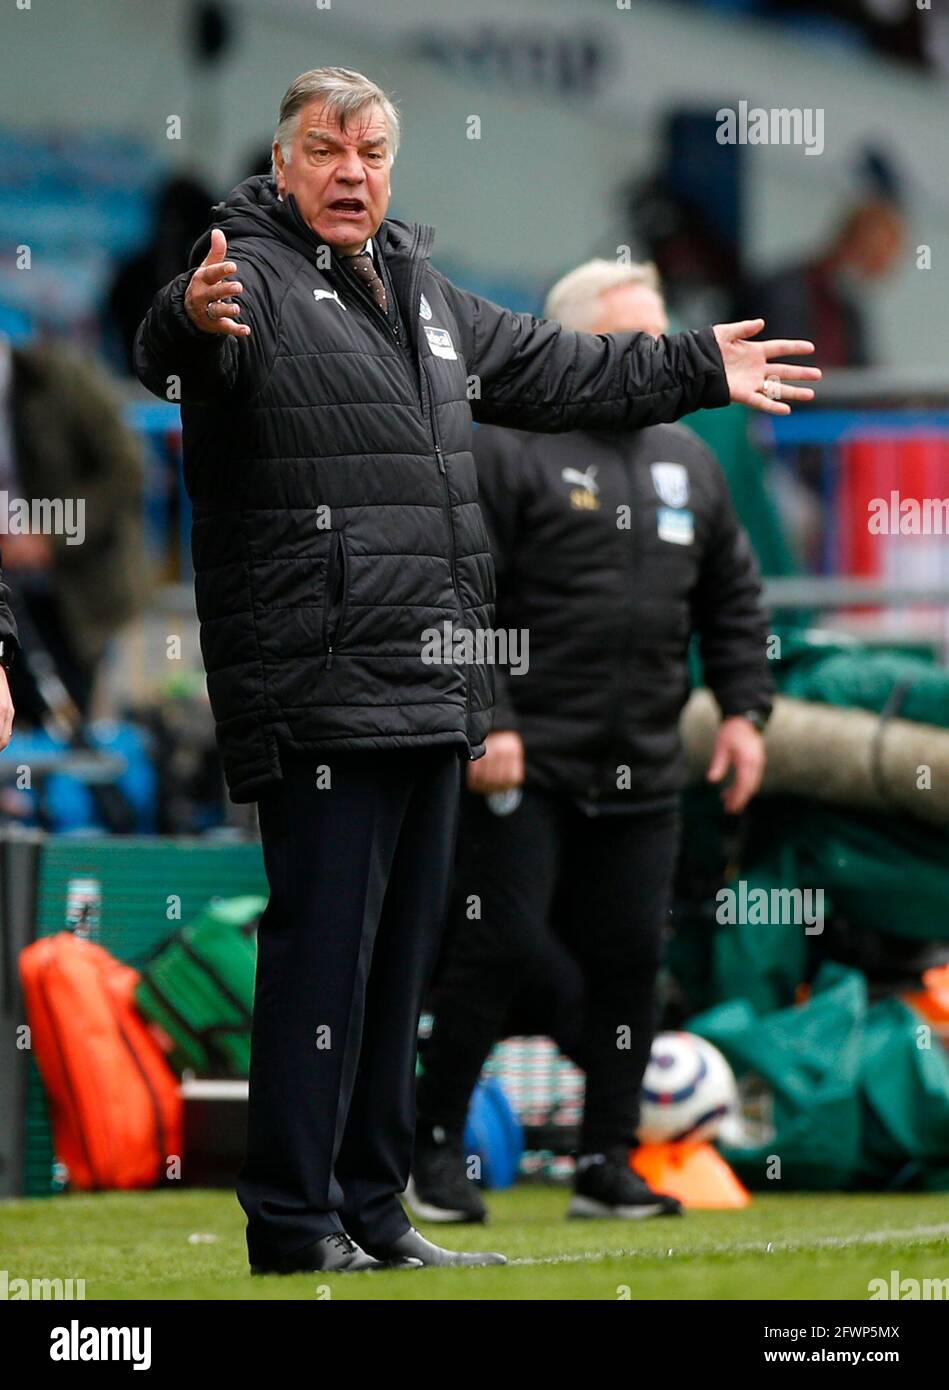 Le gérant de West Bromwich Albion, Sam Allardyce, se met en ligne lors du match de la Premier League à Elland Road, Leeds. Date de la photo: Dimanche 23 mai 2021. Banque D'Images